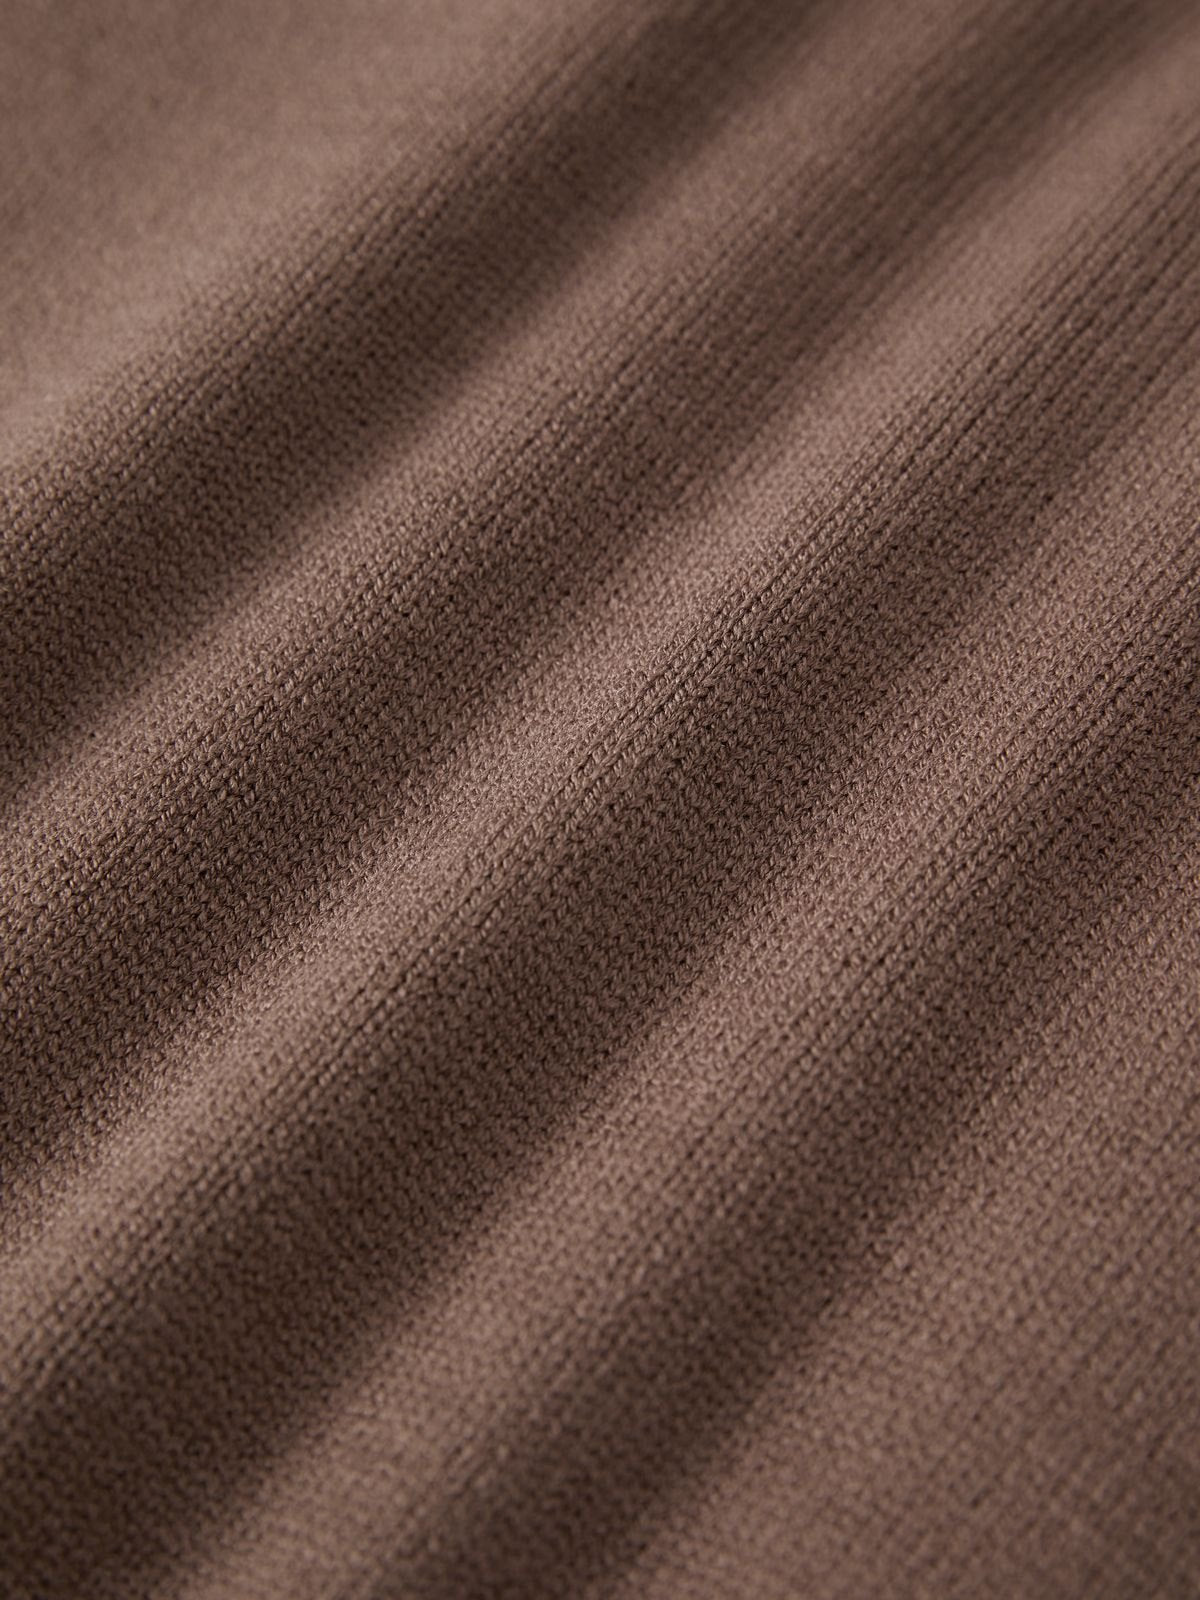 Brauner Vintage Oversize Pullover mit Drei Streifen